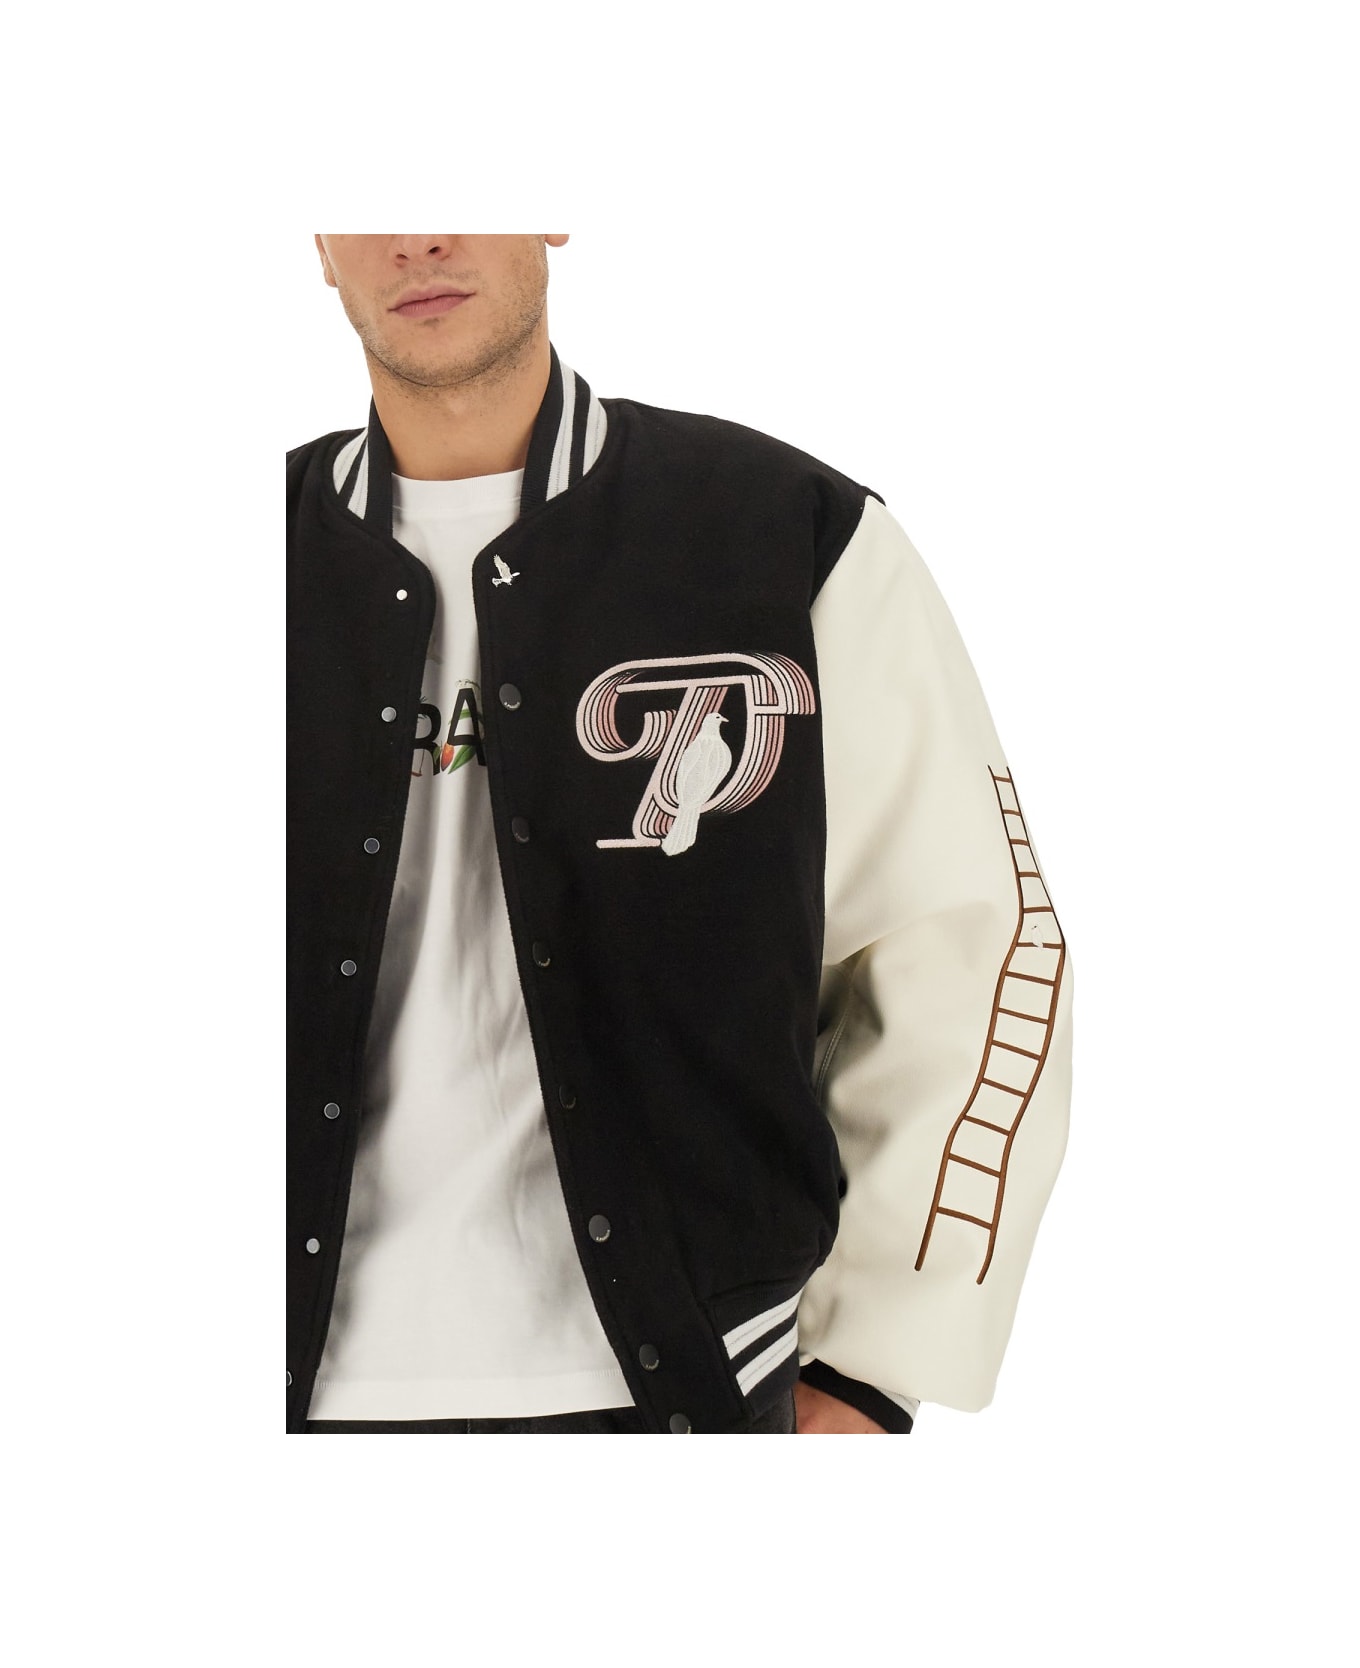 3.Paradis Jacket With Logo - BLACK ジャケット